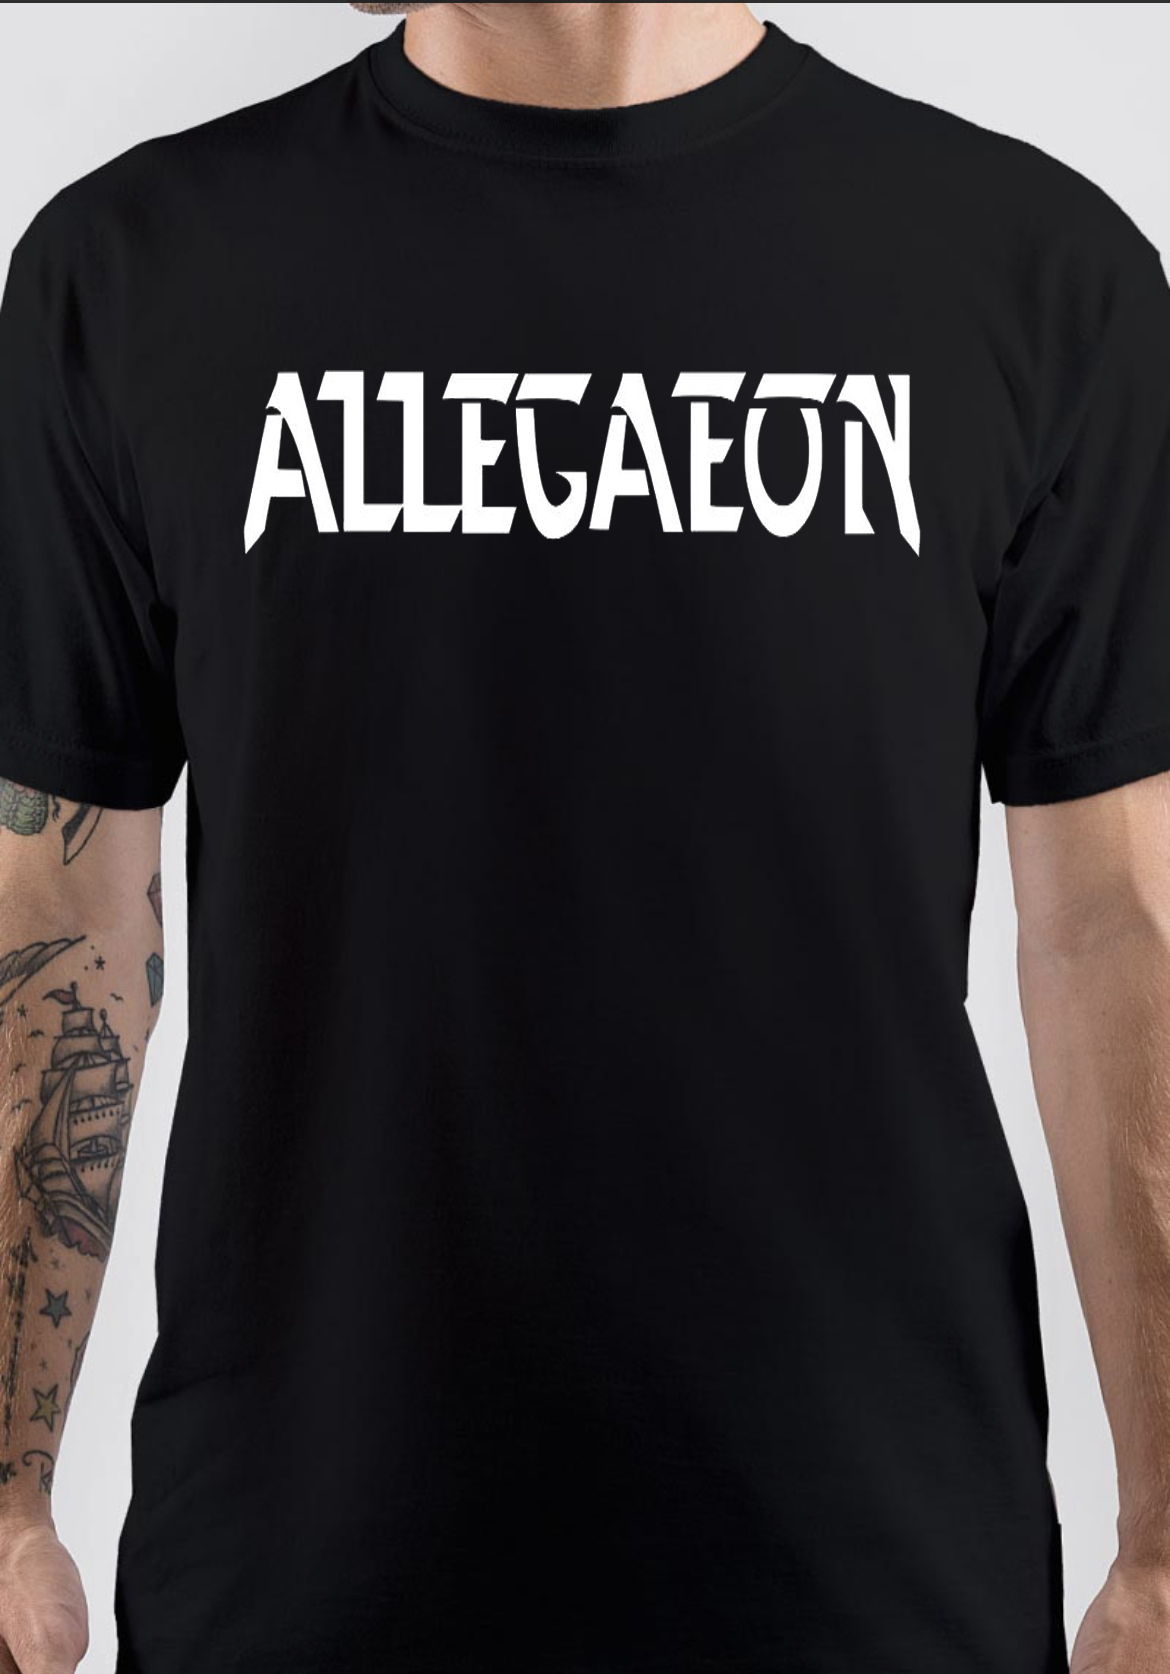 Allegaeon T-Shirt And Merchandise